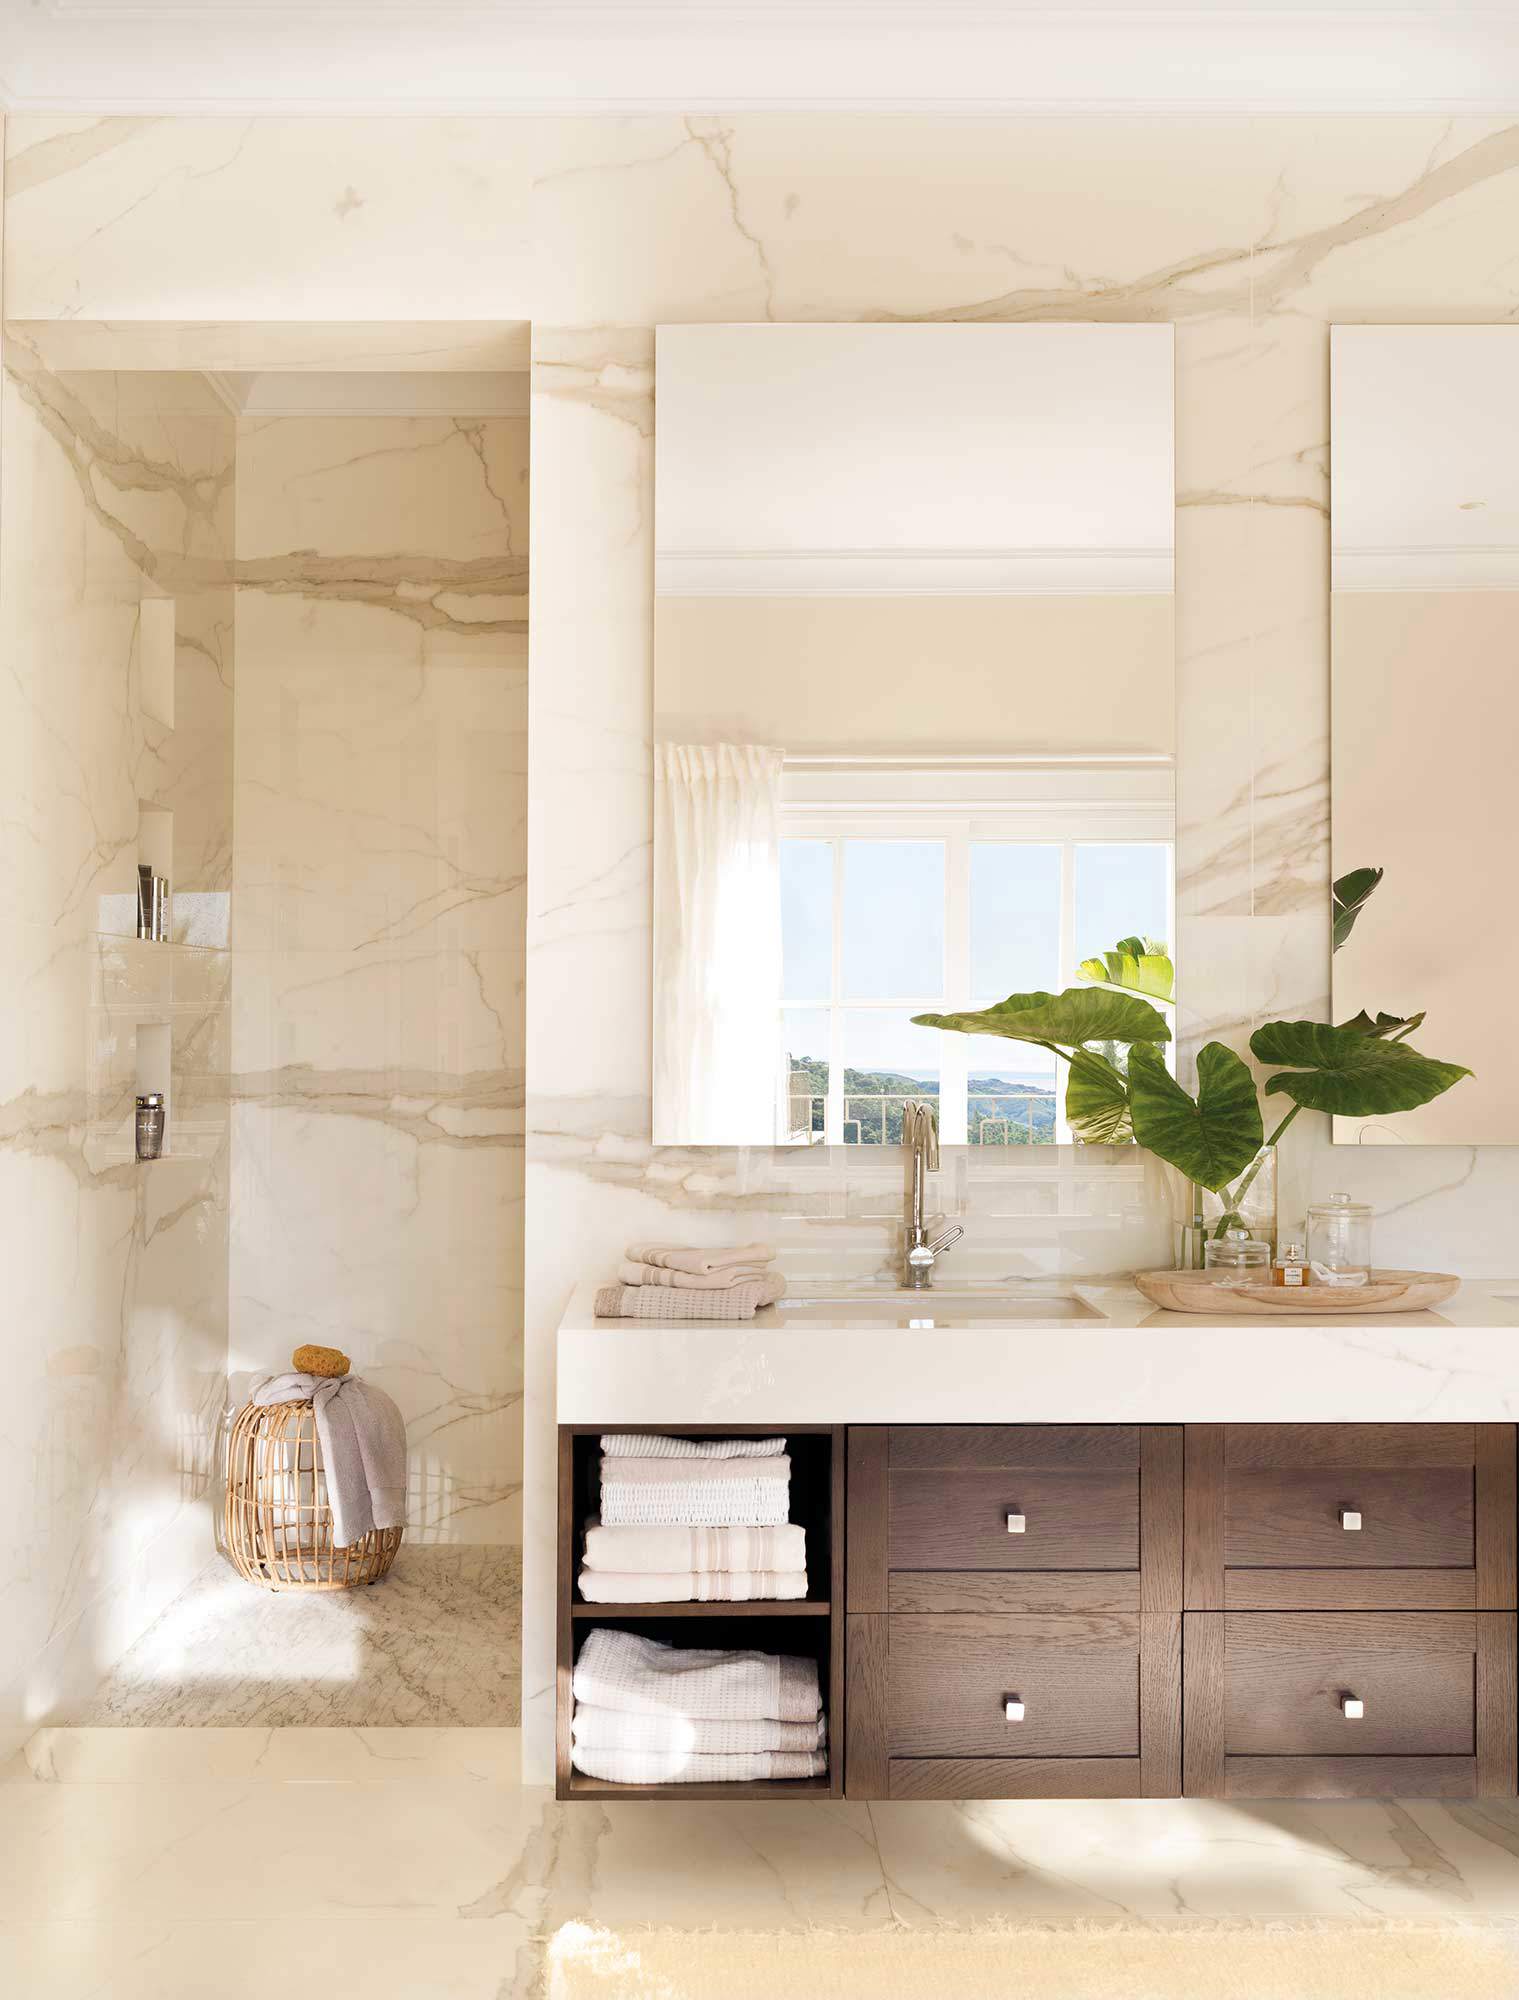 Baño revestido de mármol, mueble de madera y espejos sin marco